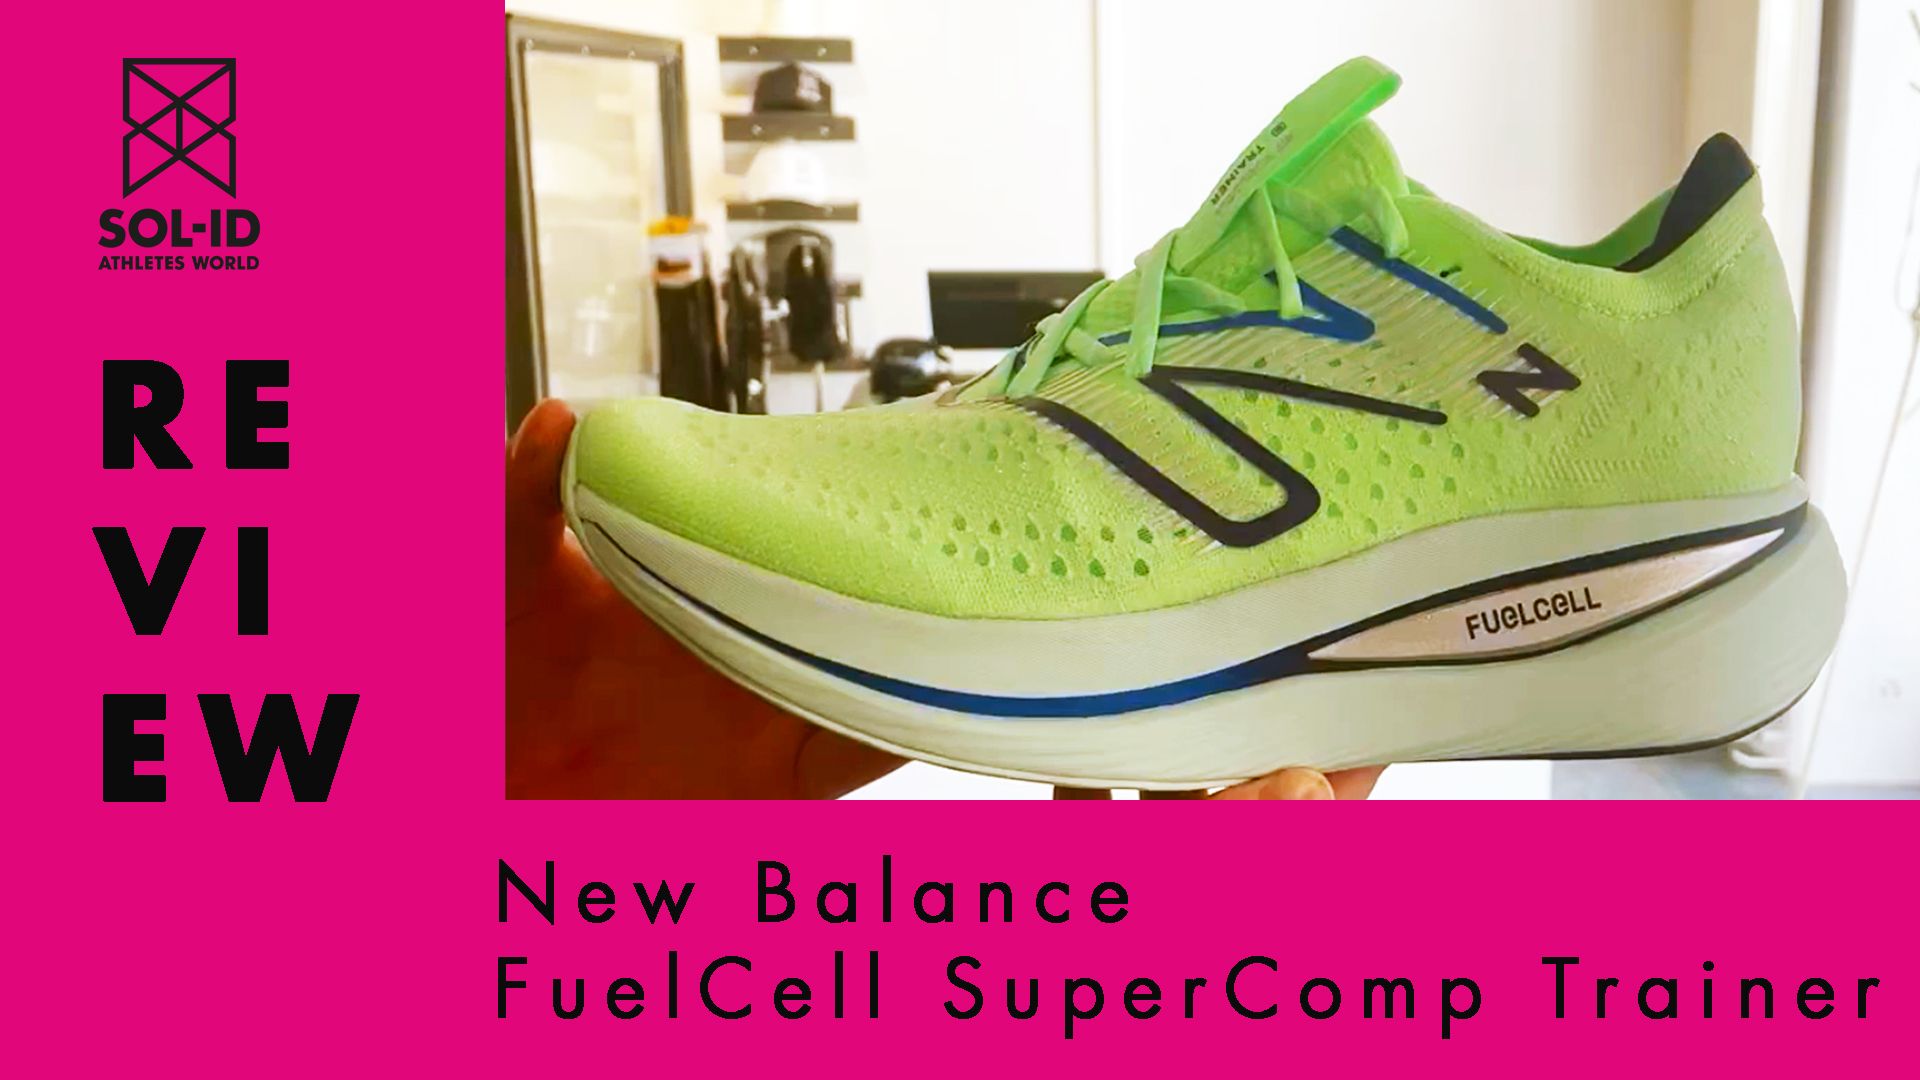 New Balance FuelCell SuperComp Trainer Testbericht von SOL-ID